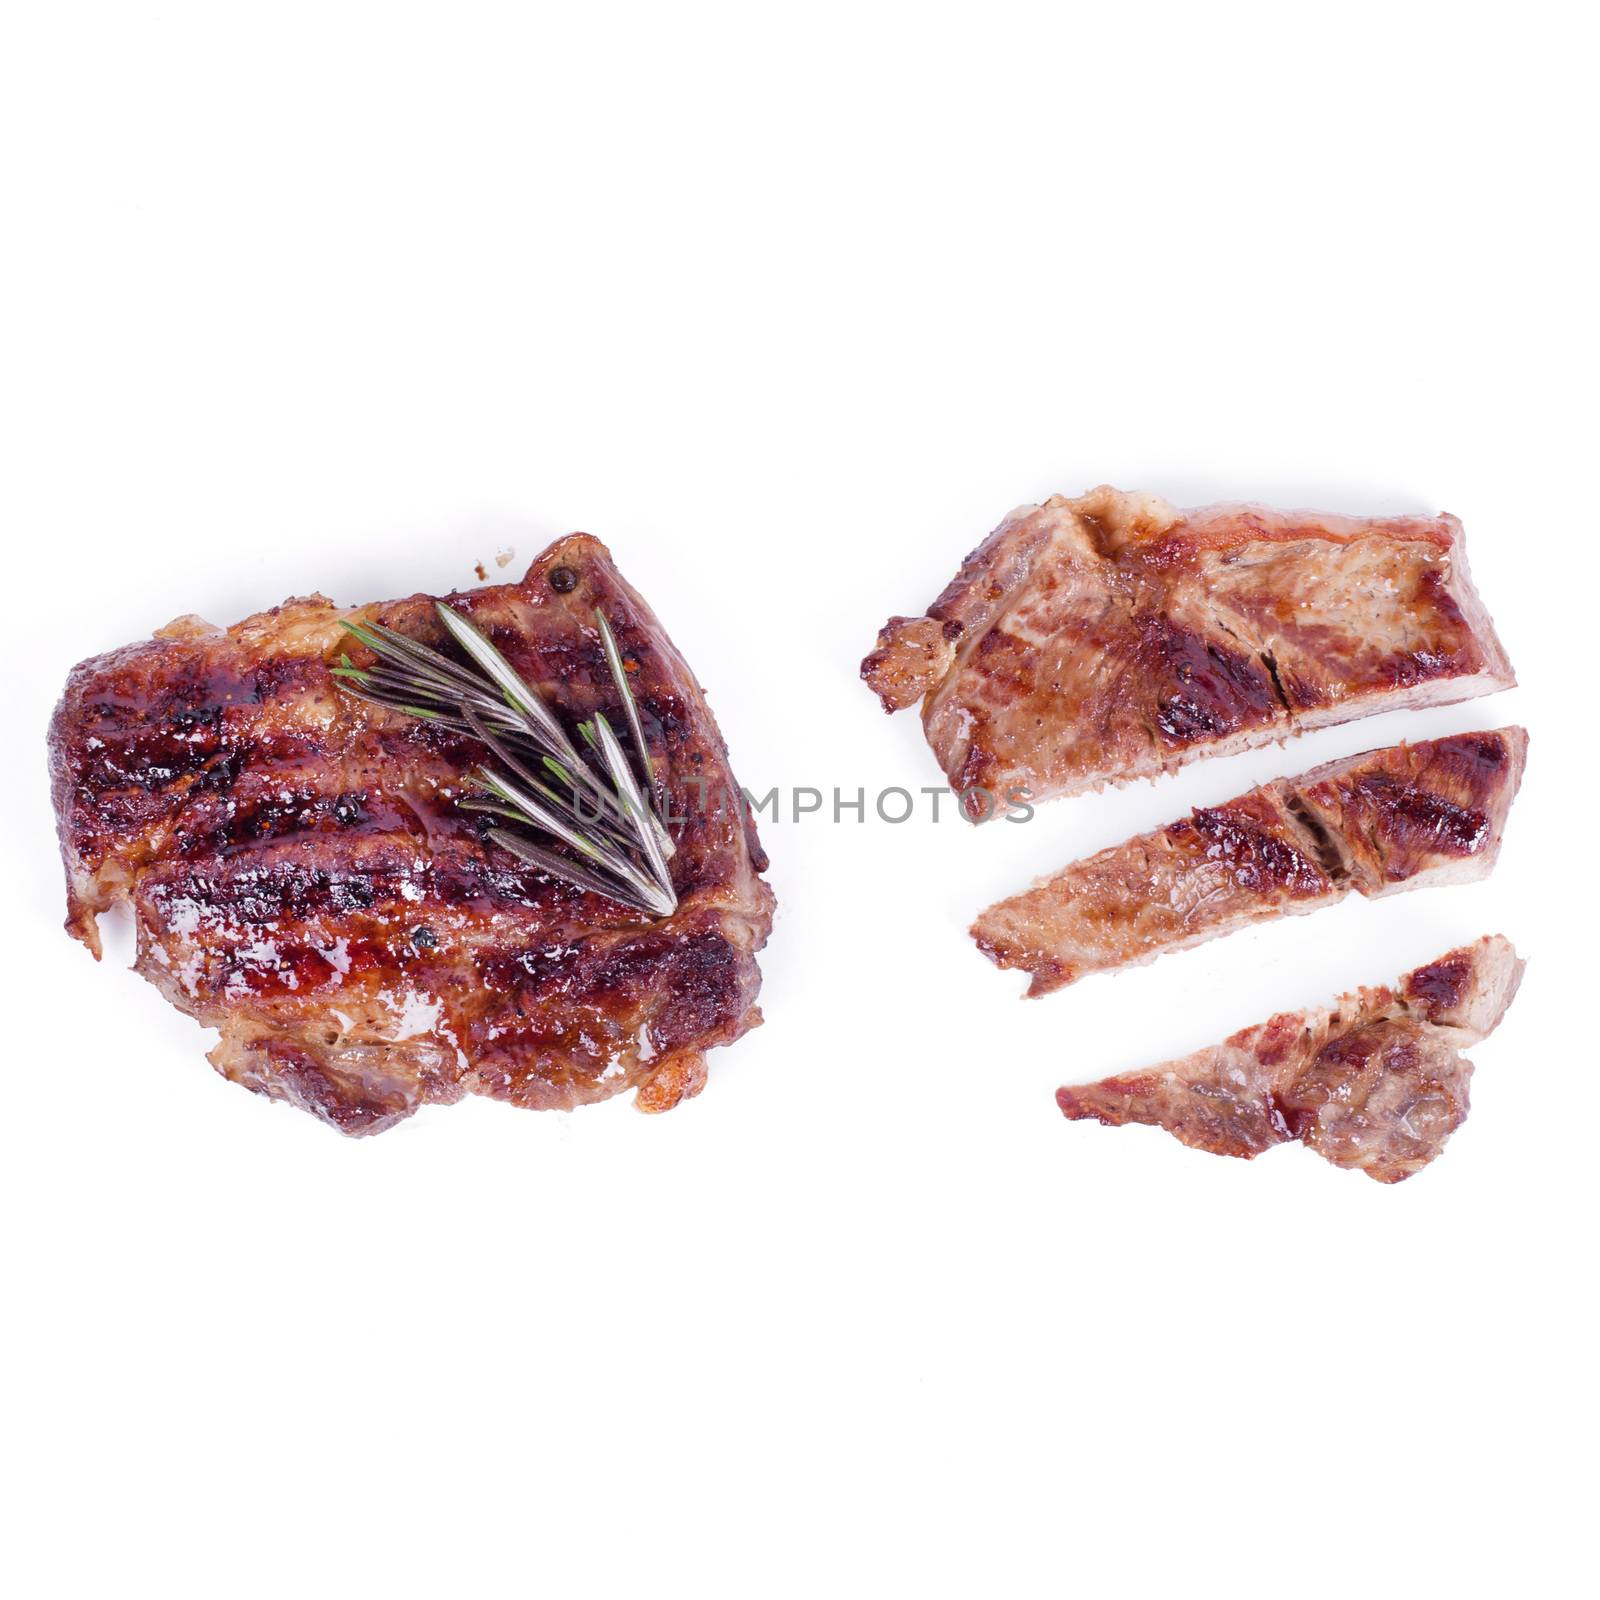 Grilled steak by rufatjumali